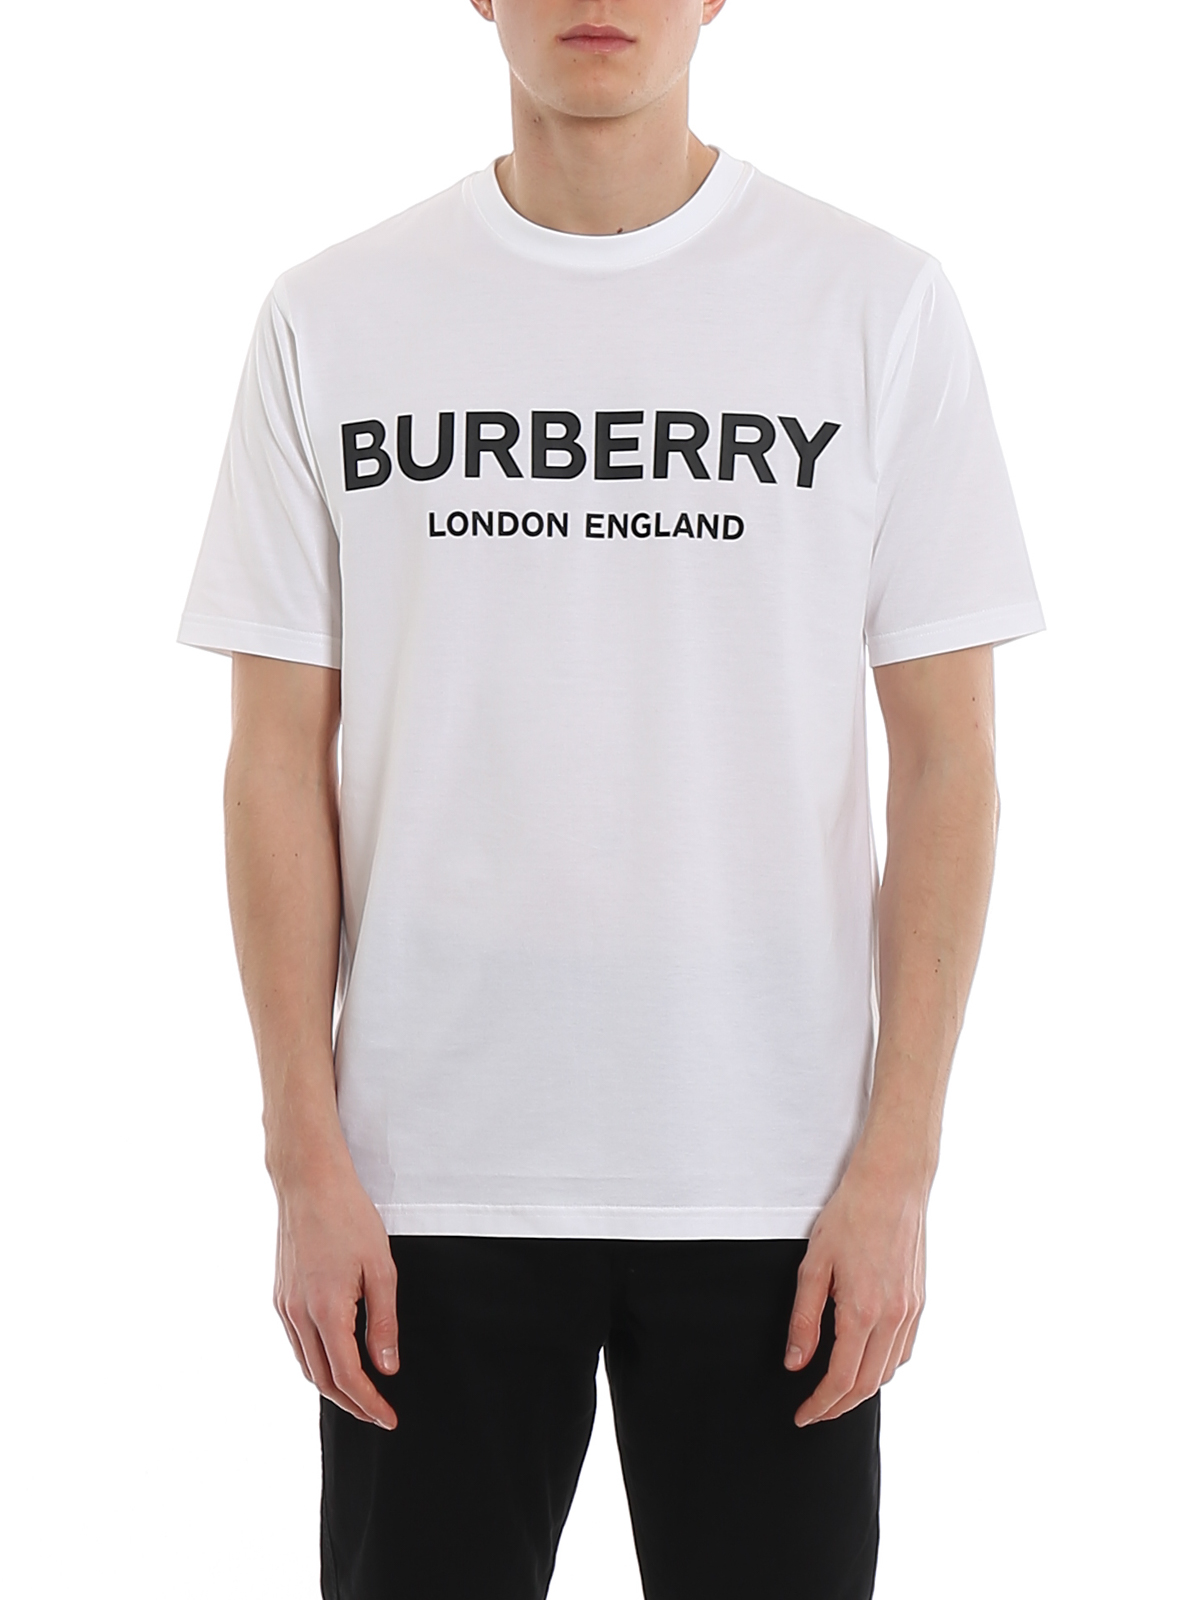 Burberry T-Shirt Weiß 10Y KINDER Hemden & T-Shirts Stricken Rabatt 97 % 